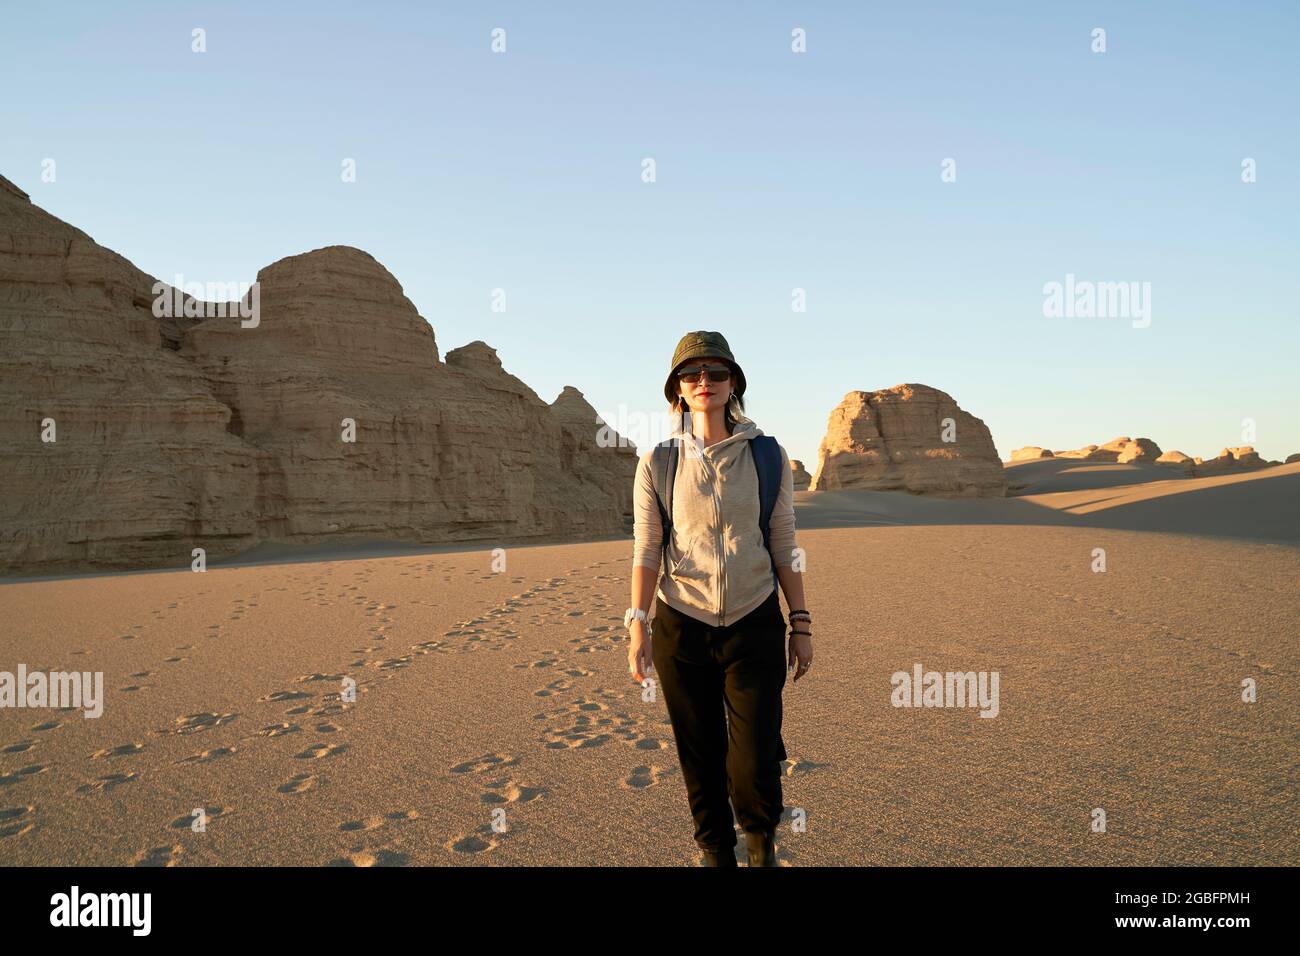 femme asiatique voyageur routard marchant dans le désert au coucher du soleil avec yardang landform en arrière-plan Banque D'Images